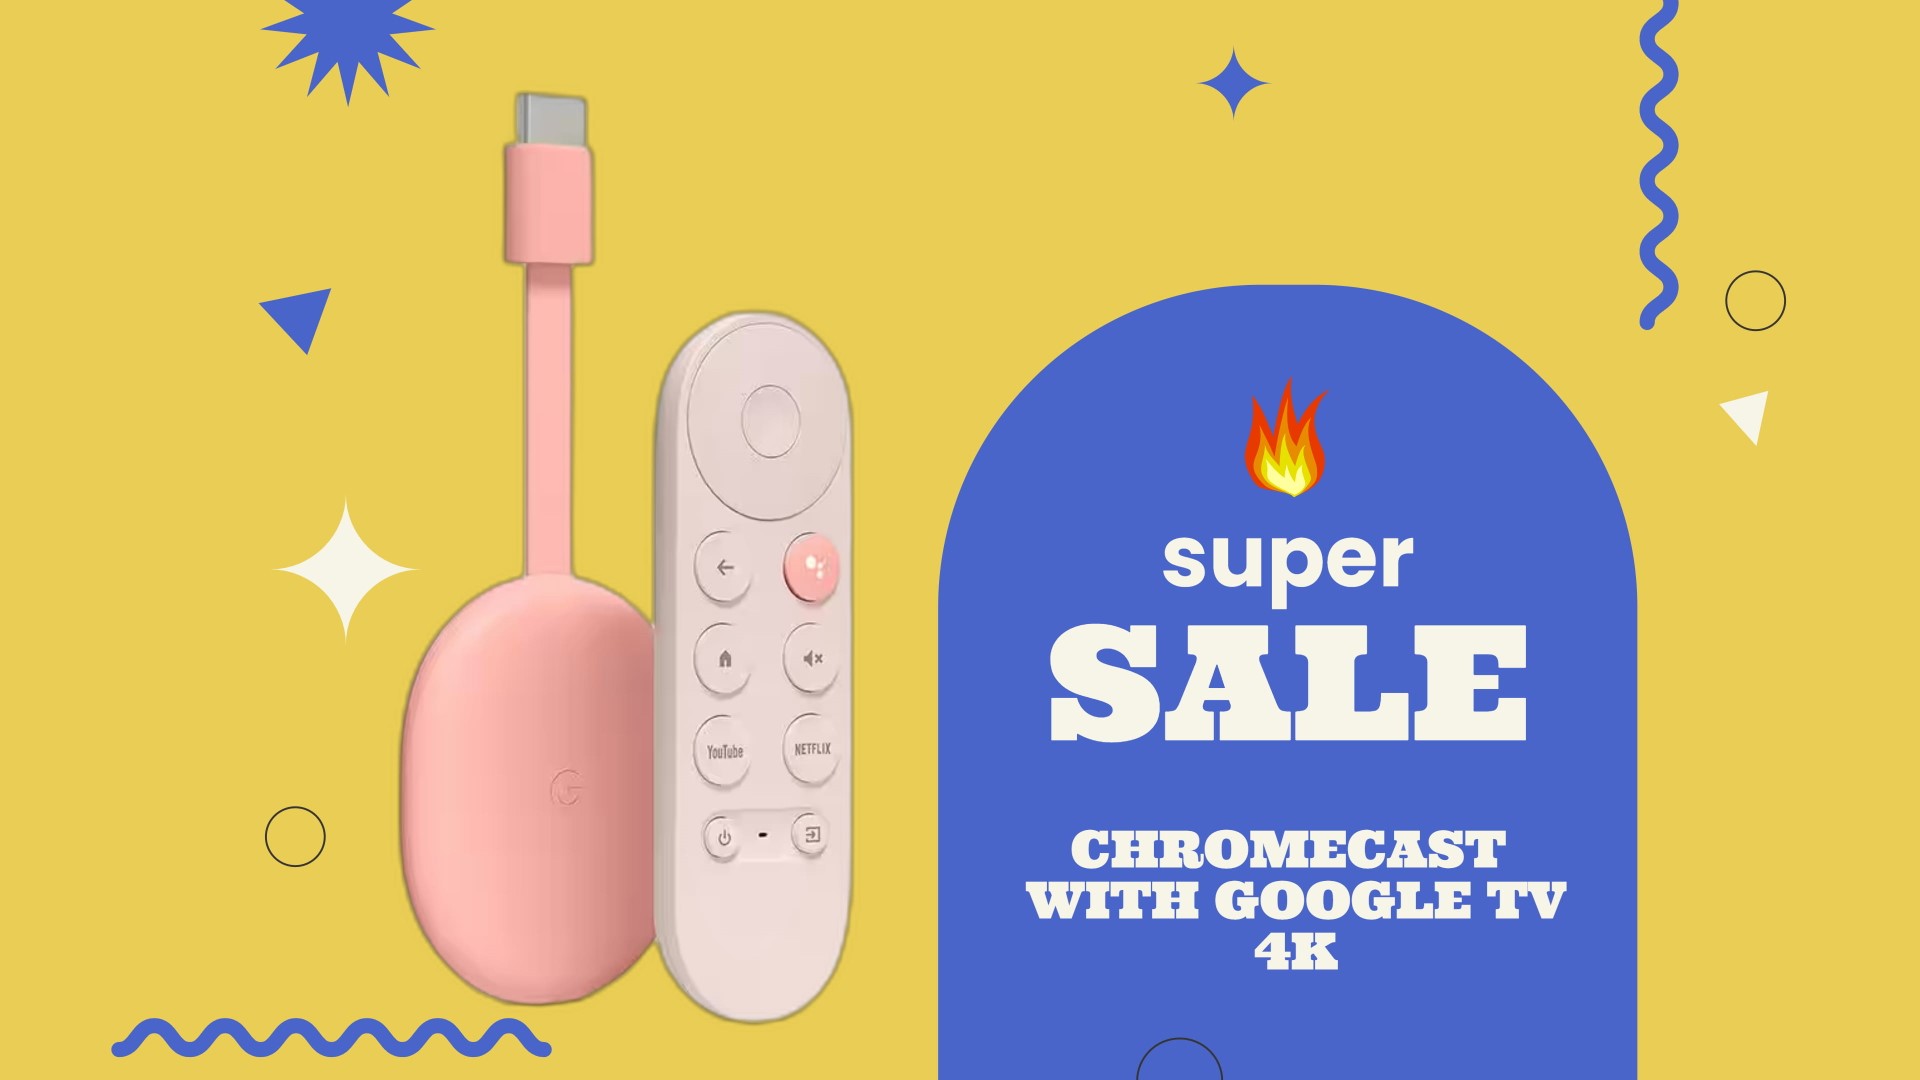 chromecast sale